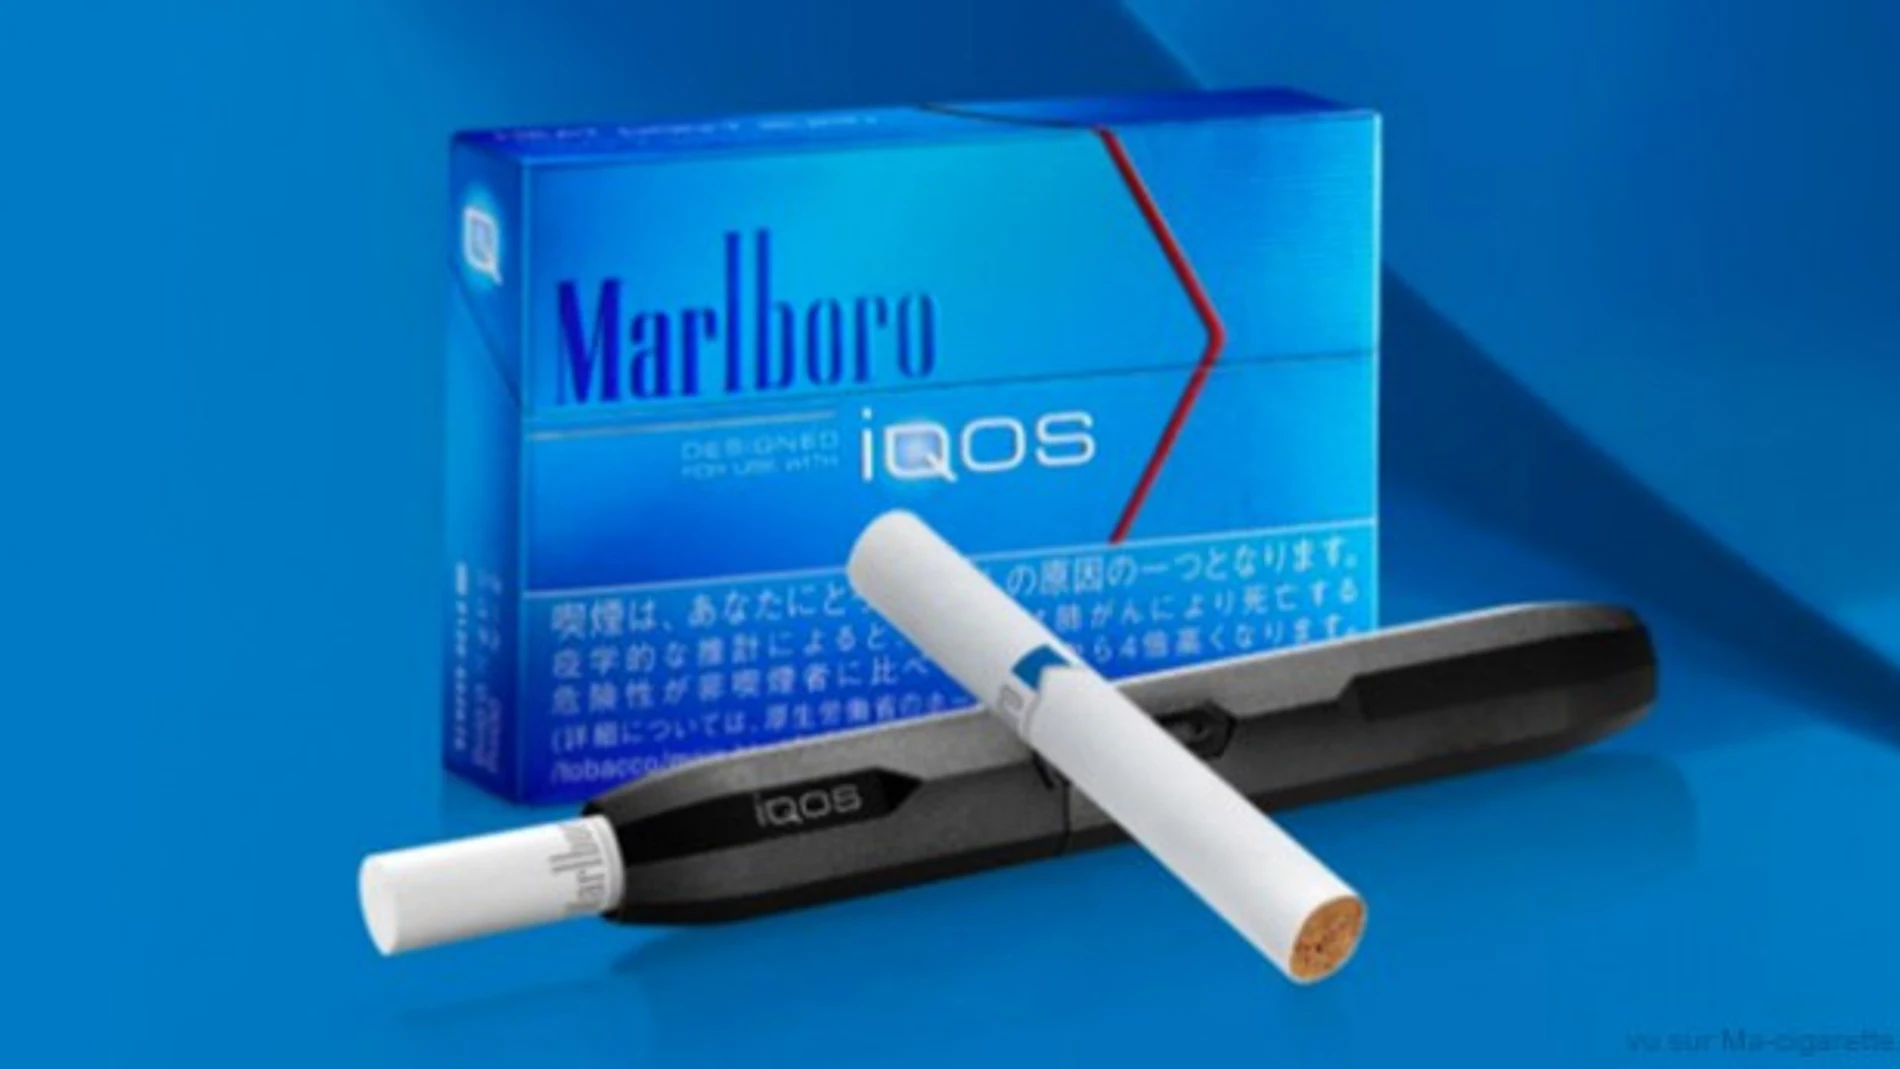 La alternativa al método convencional de consumo de tabaco, denominada iQOS, de Philip Morris International (PMI),